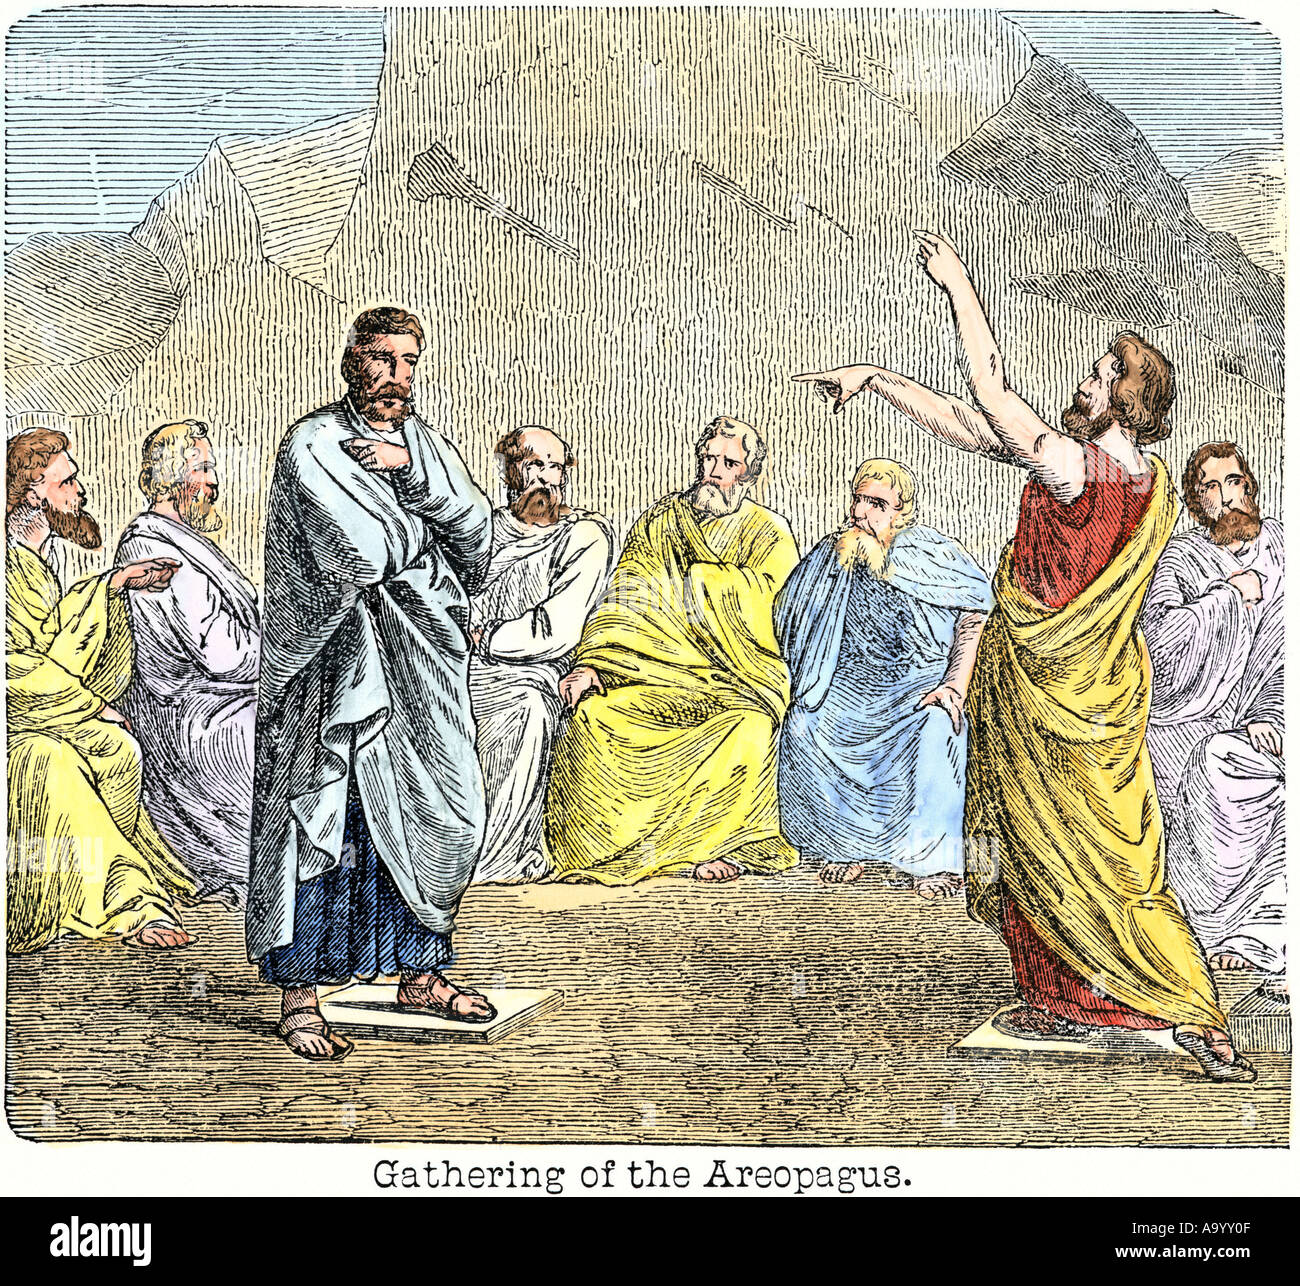 Rassemblement de l'Aréopage d'une cour de délibération qui s'est réuni à l'air libre l'Athènes antique. À la main, gravure sur bois Banque D'Images